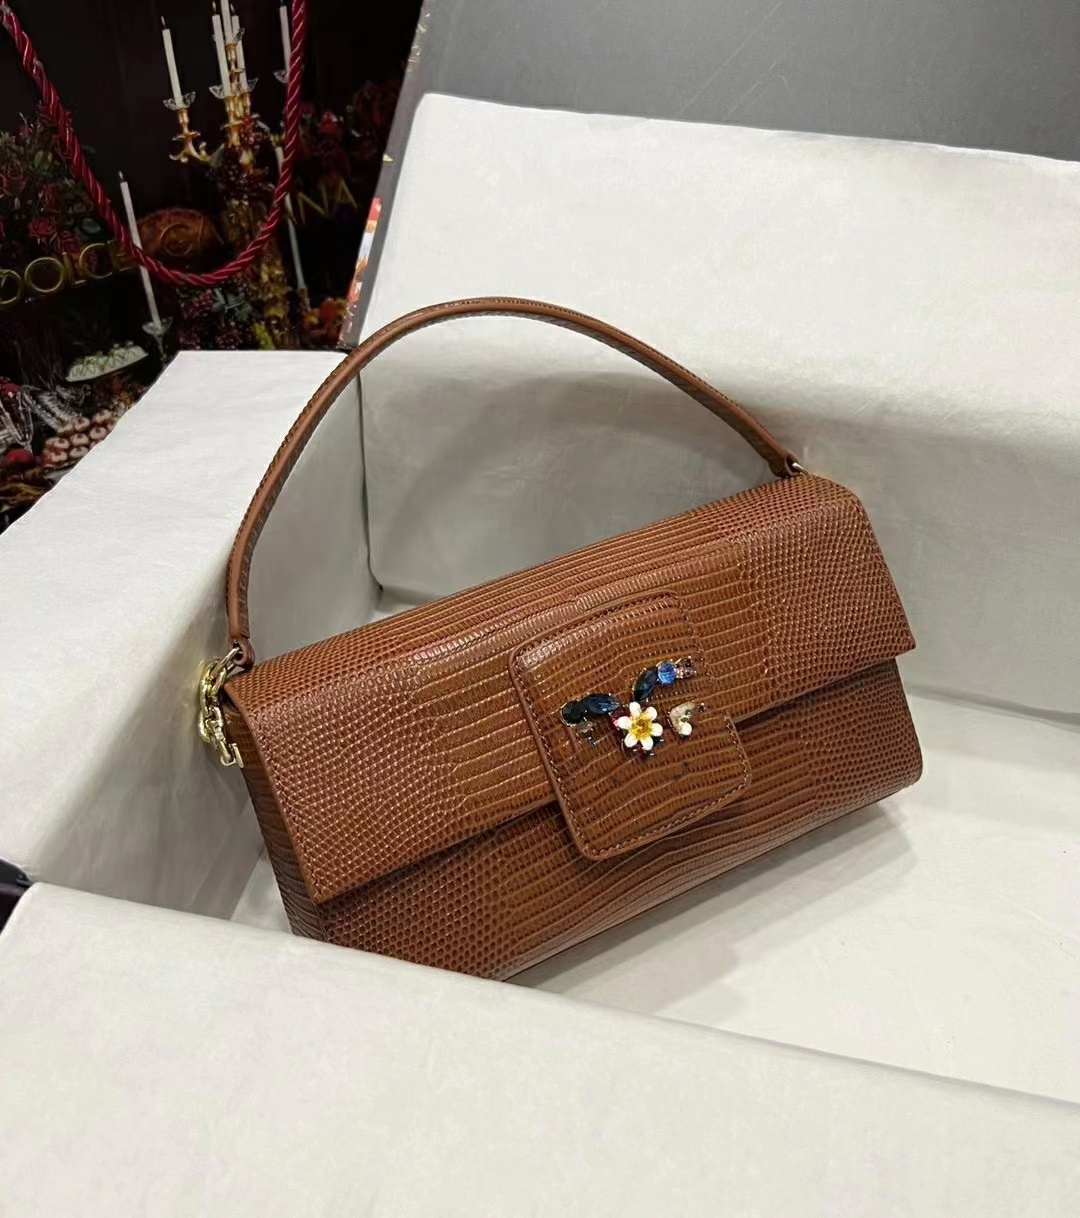 Importowana ręczna torba skórna jaszczurki z niewidzialnym zamykaniem magnetycznym, modnym, wszechstronnym i wykwintnym designerskim torbą